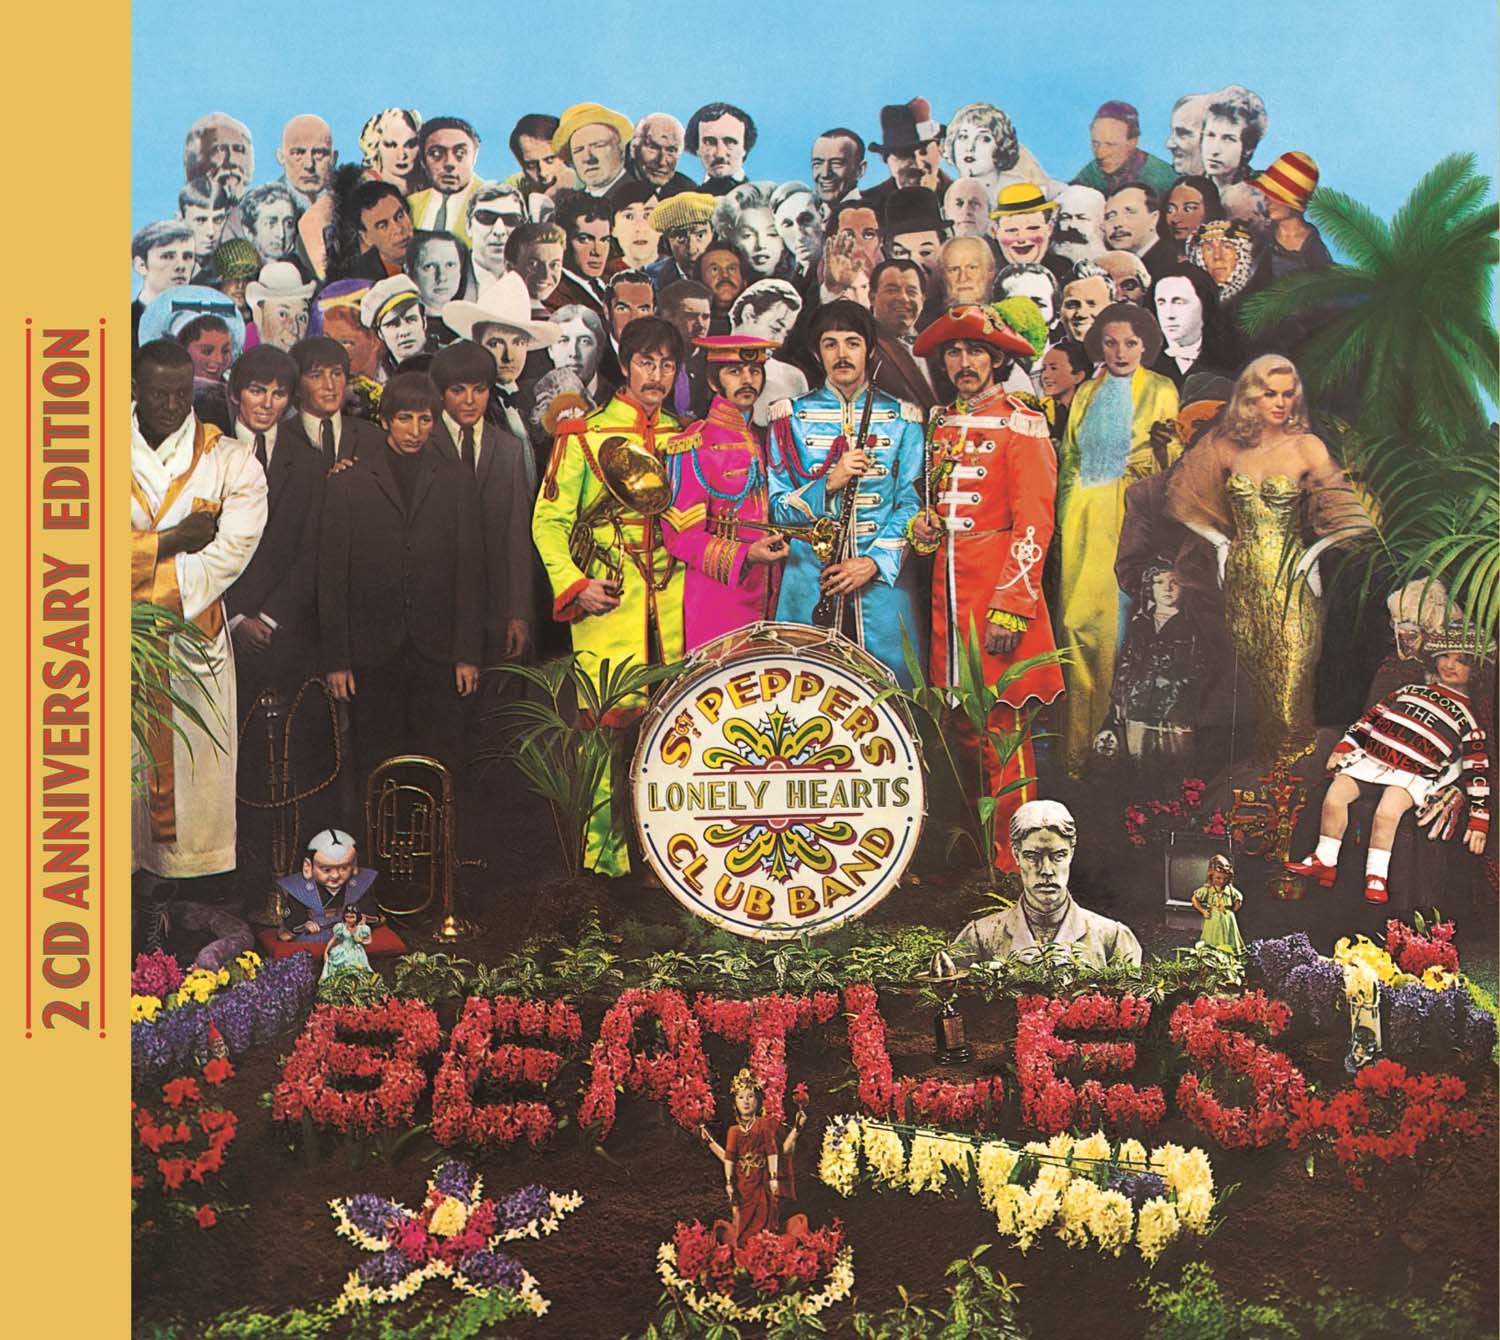 Audio Cd Beatles (The) - Sgt. Pepper's Lonely Hearts Club Band (Anniversary Edition) NUOVO SIGILLATO, EDIZIONE DEL 26/05/2017 SUBITO DISPONIBILE